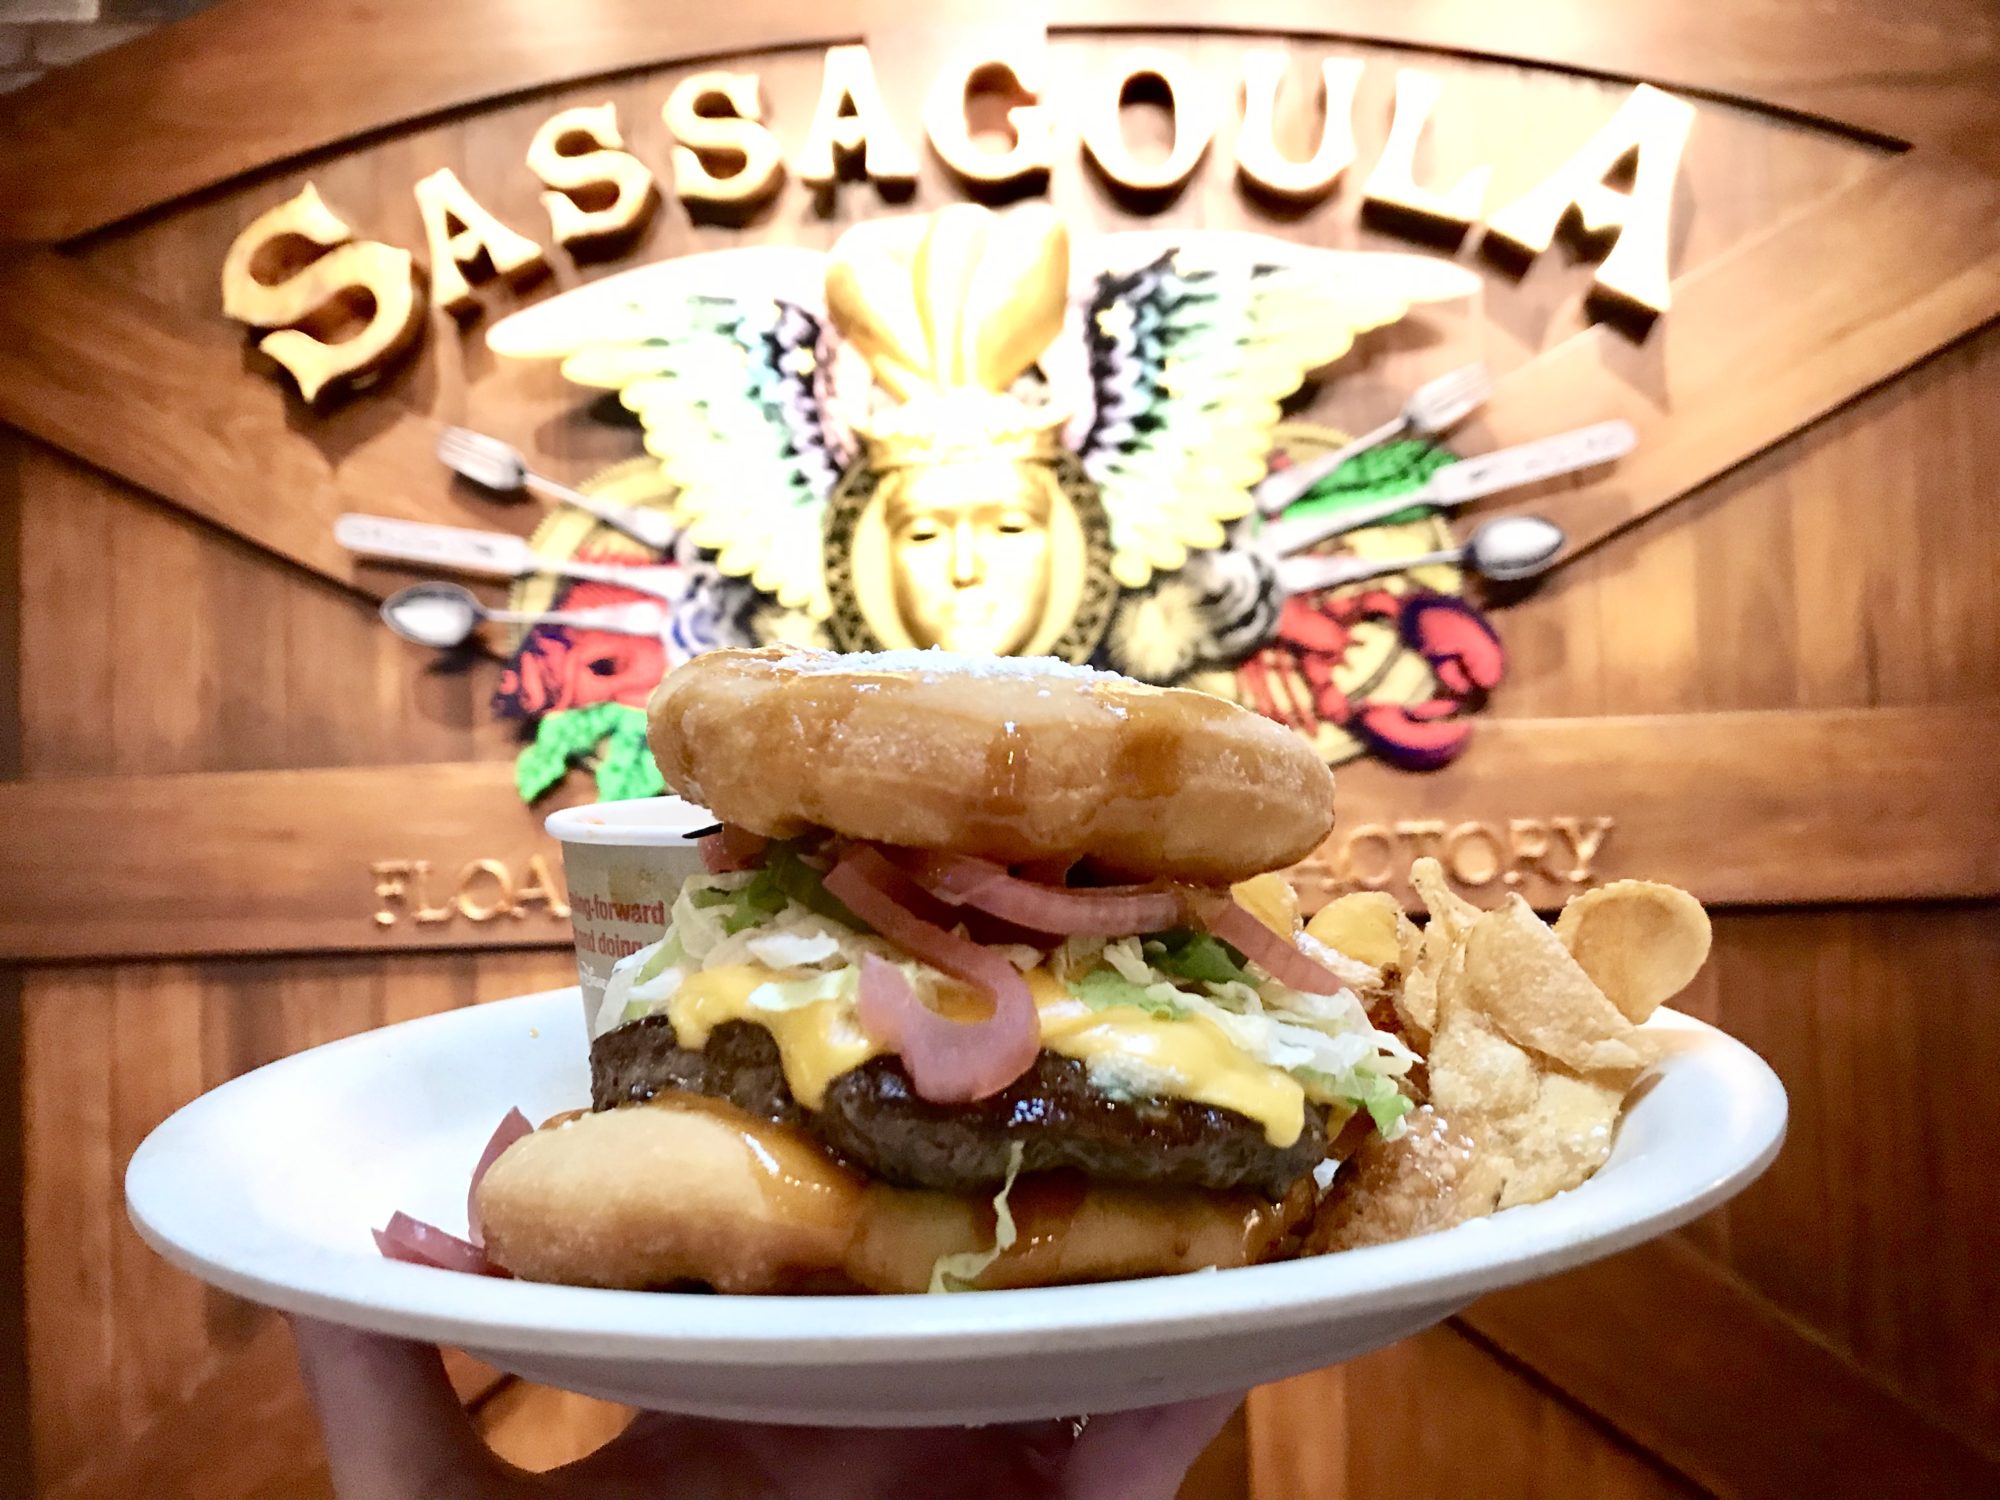 Beignet Burger is Divine – Review